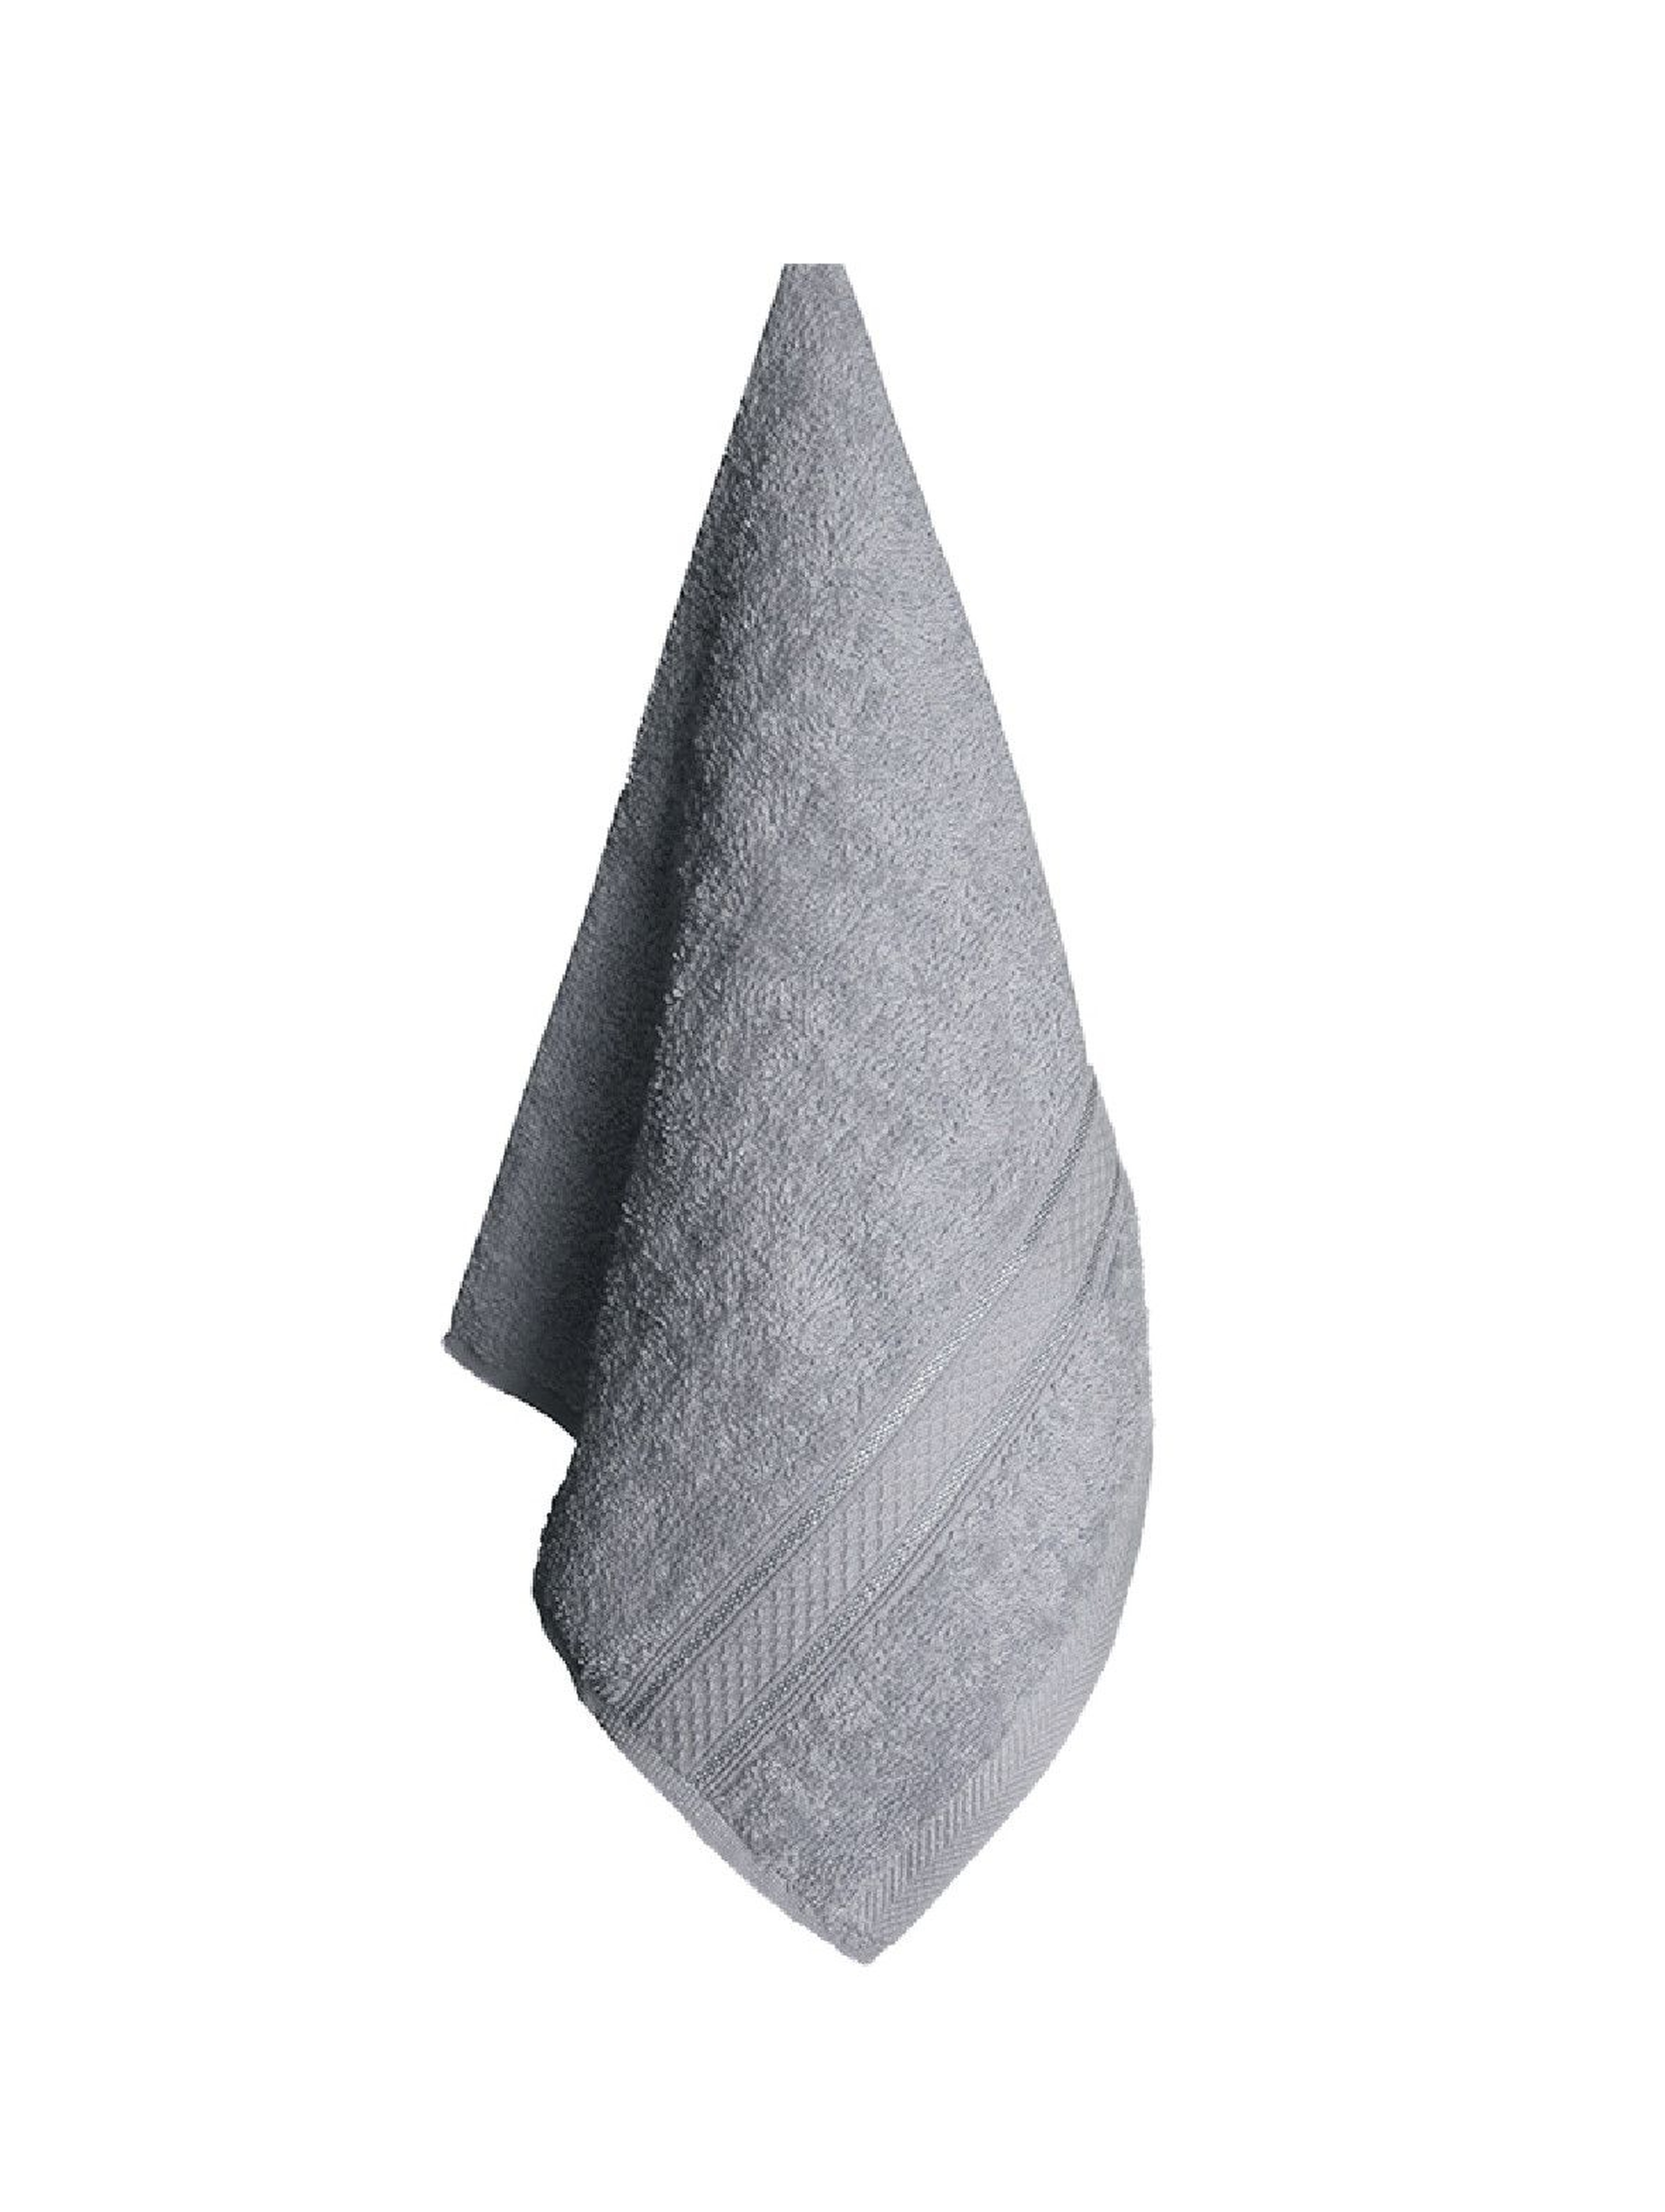 Ręcznik bawełniany VENA szary 70x140cm